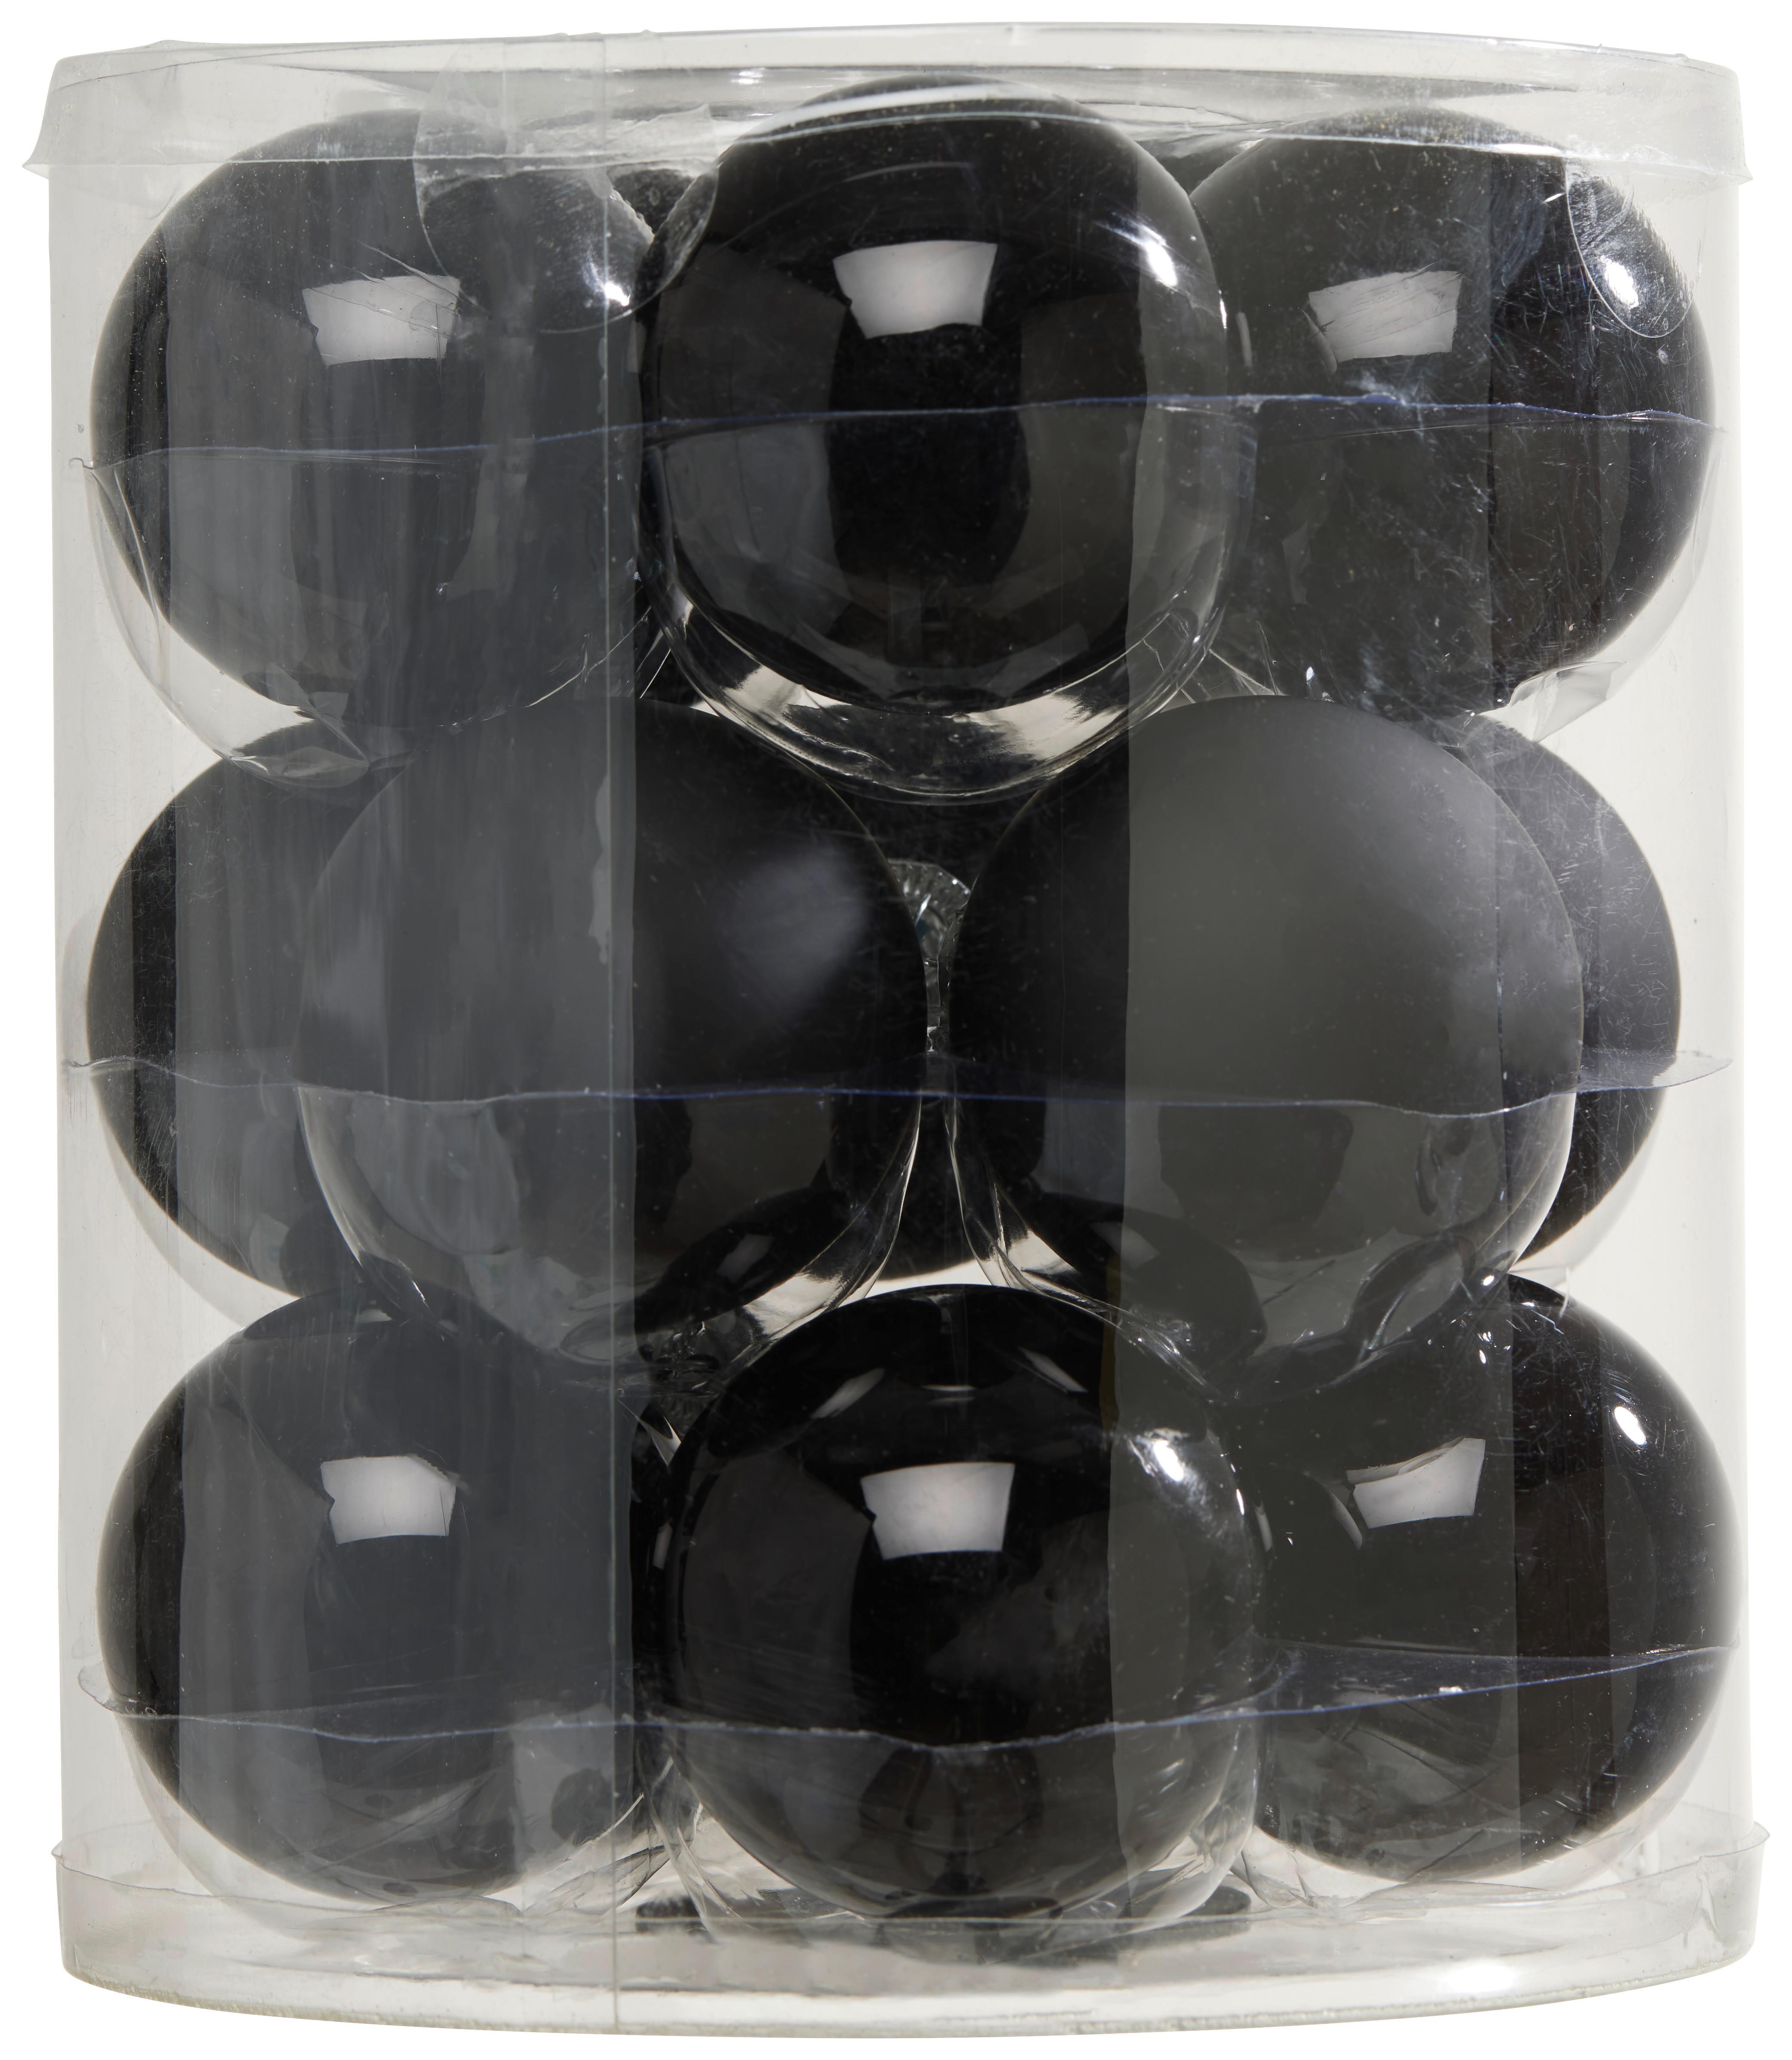 Baňky Na Vánoční Stromeček Noel, Ø: 6cm, 15ks/bal. - černá, Basics, sklo (6cm) - Modern Living